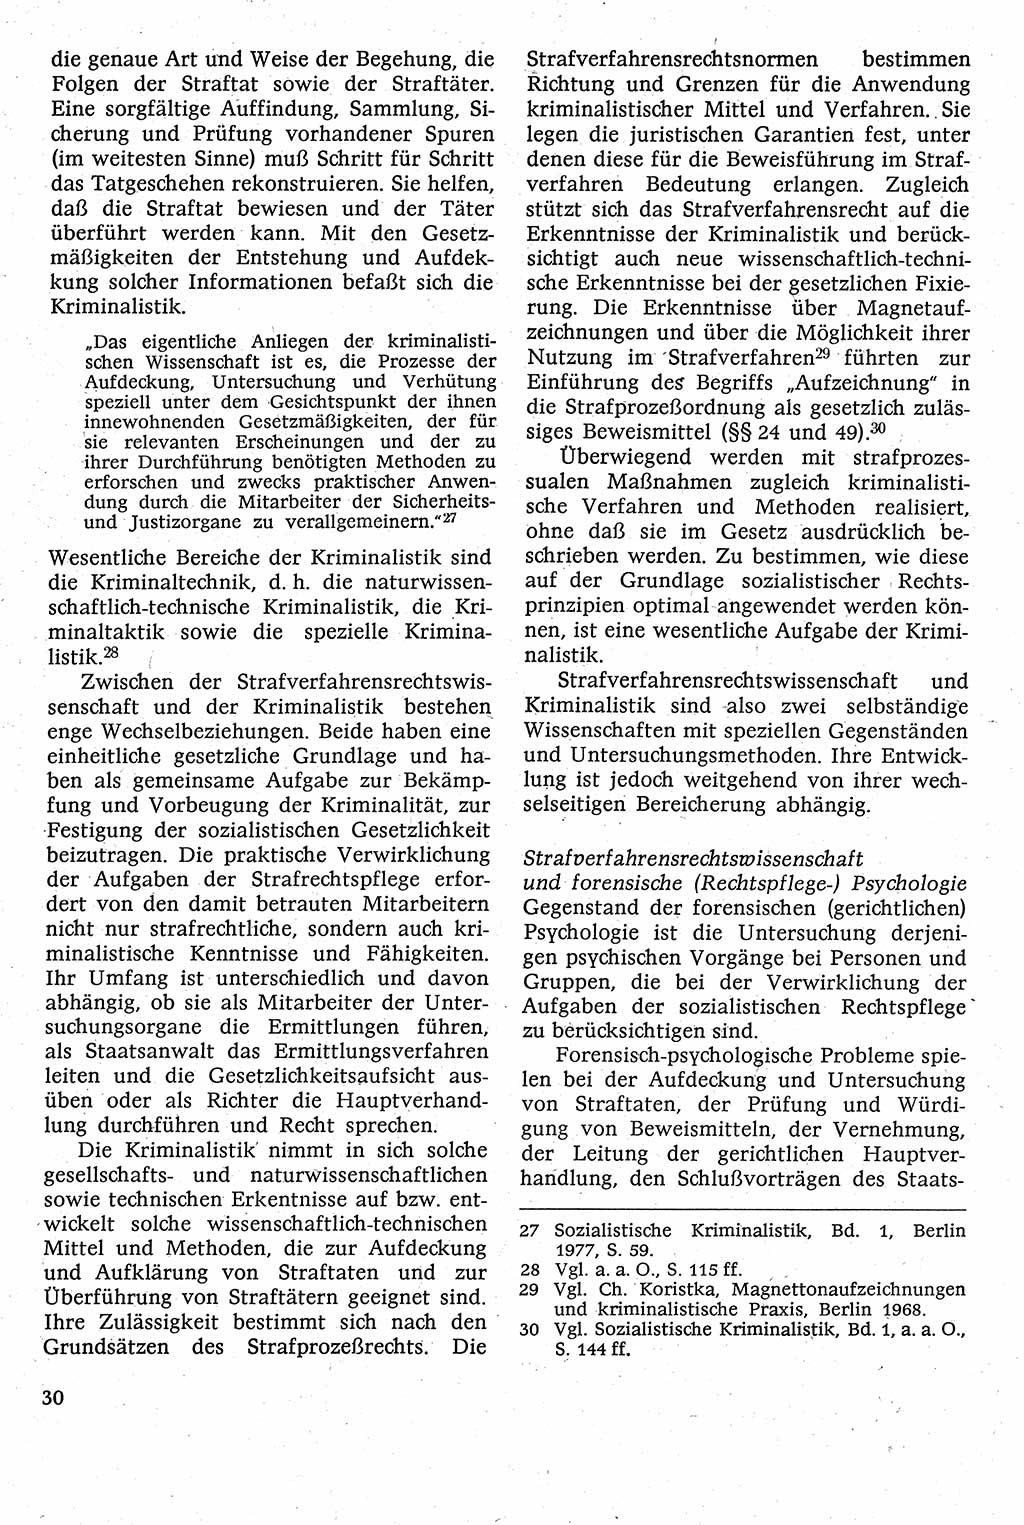 Strafverfahrensrecht [Deutsche Demokratische Republik (DDR)], Lehrbuch 1982, Seite 30 (Strafverf.-R. DDR Lb. 1982, S. 30)